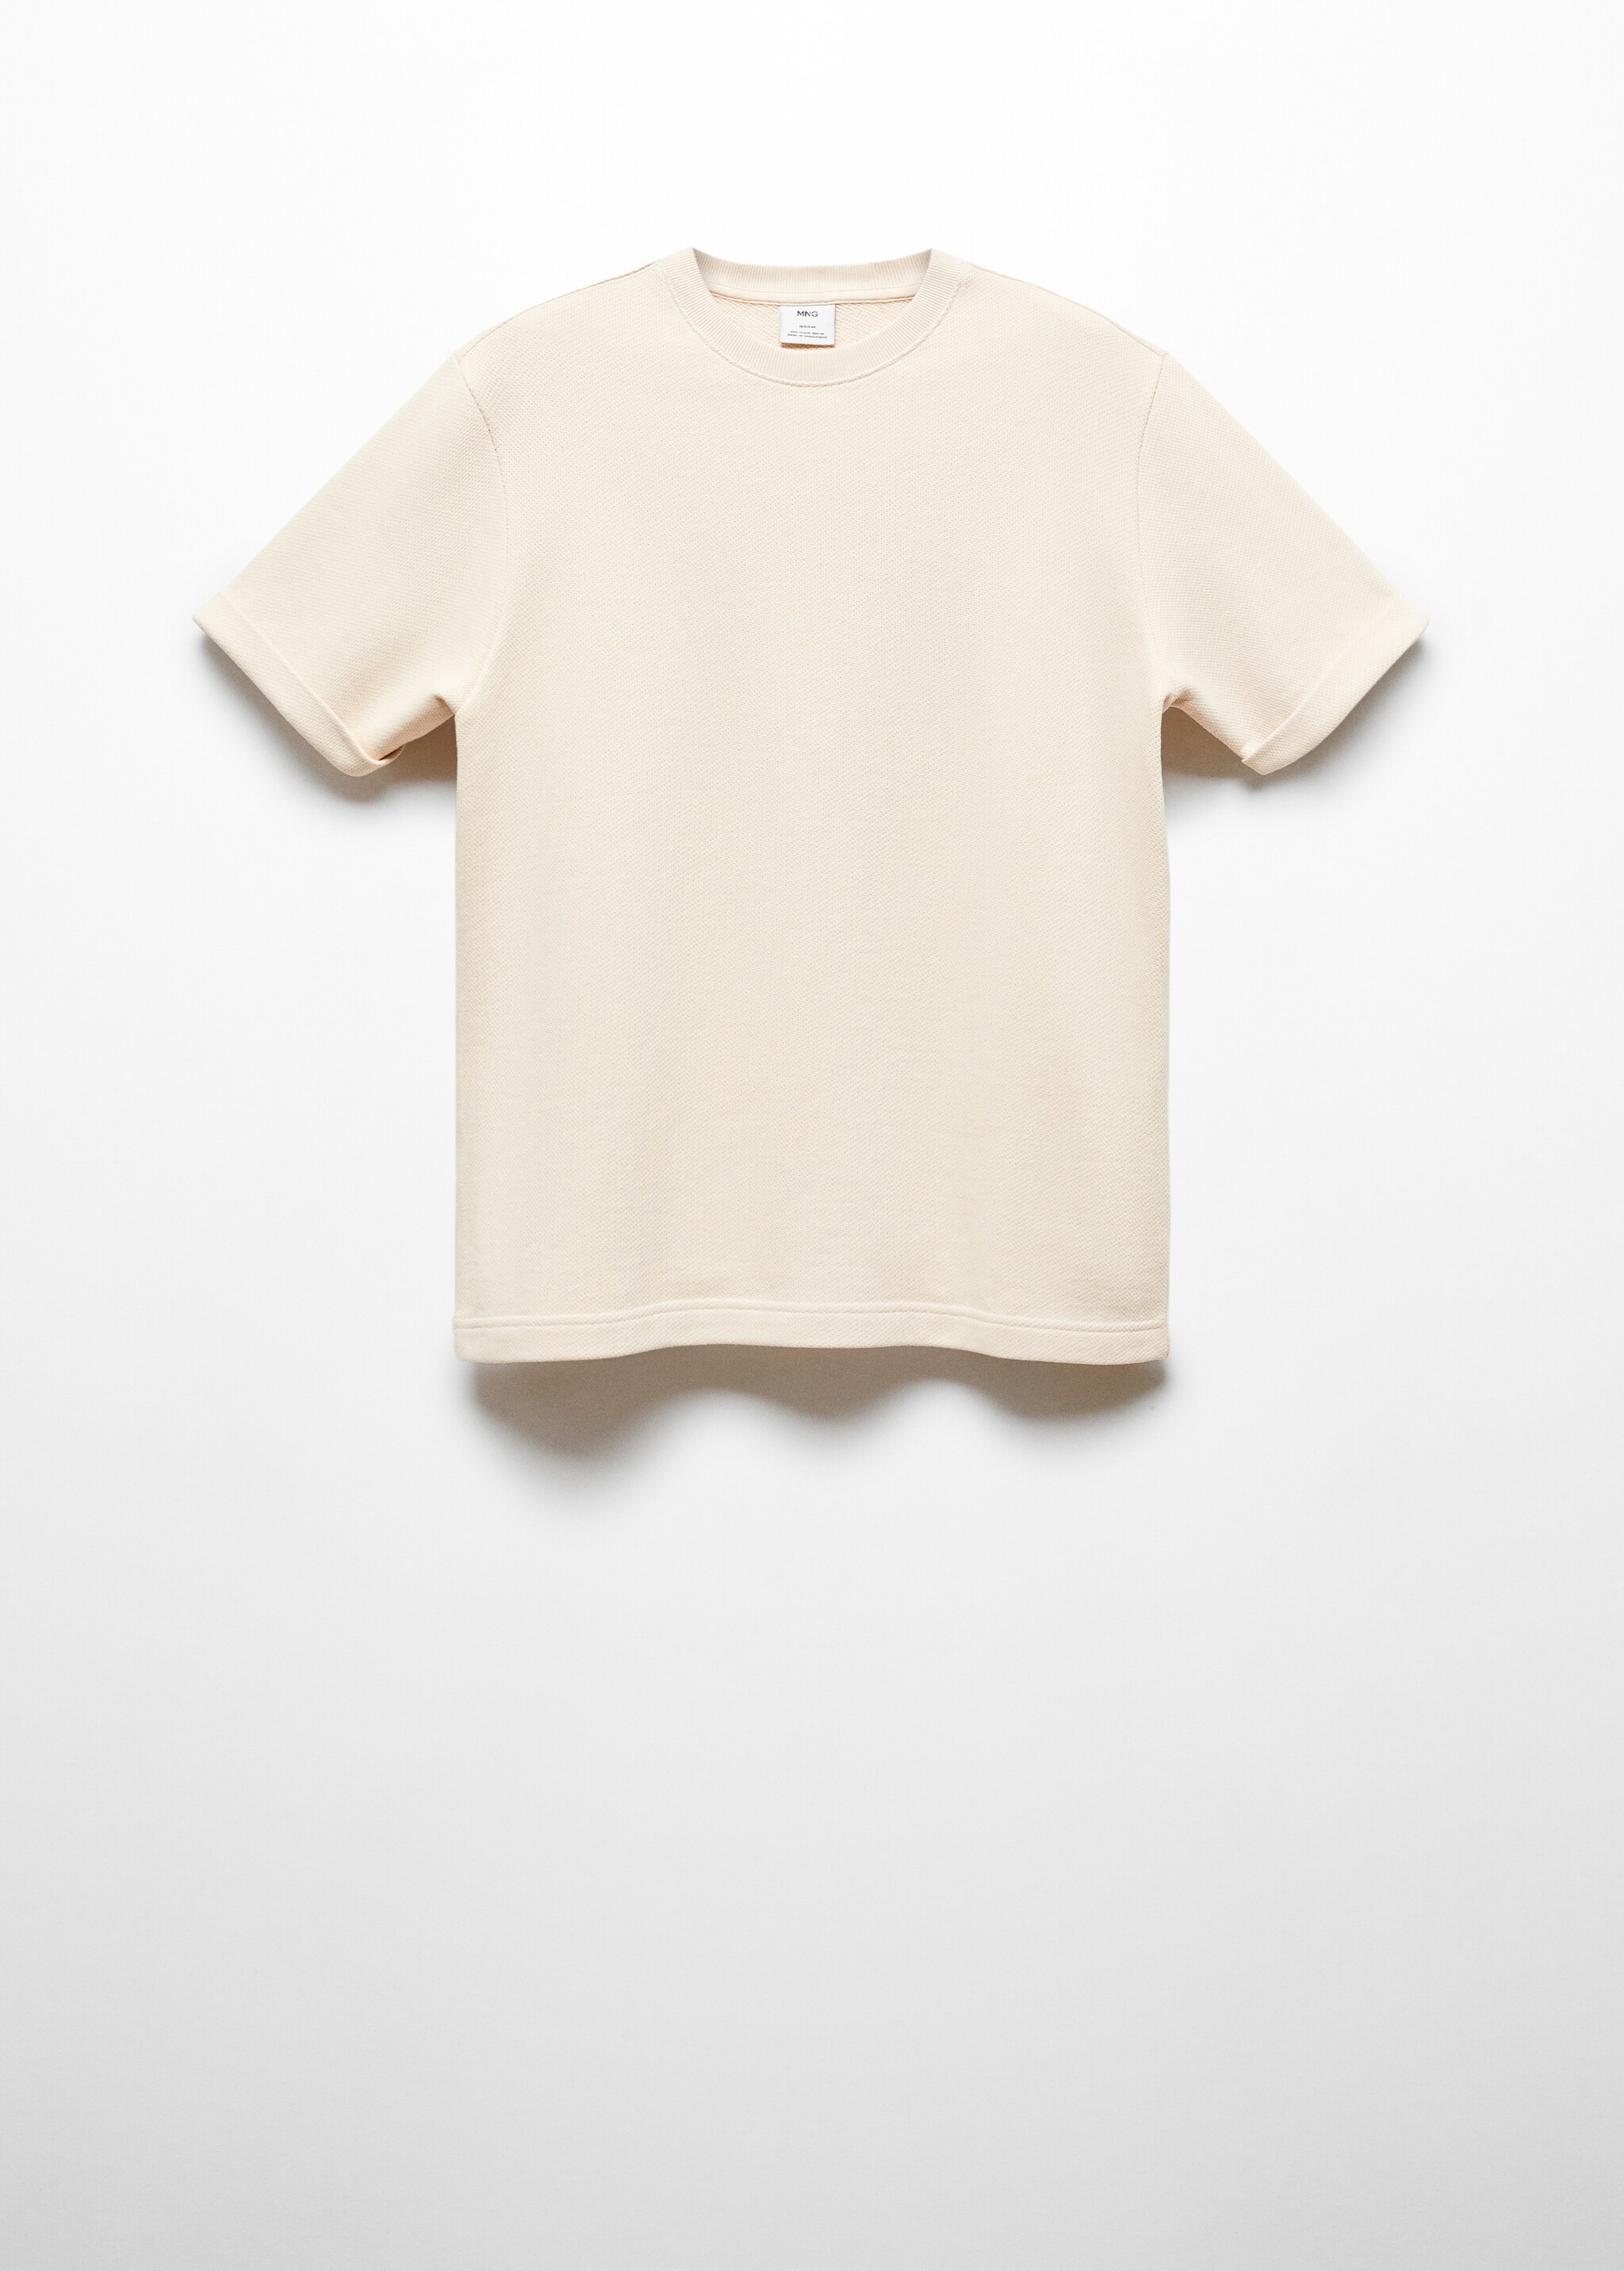 Camiseta algodón estructura - Artículo sin modelo